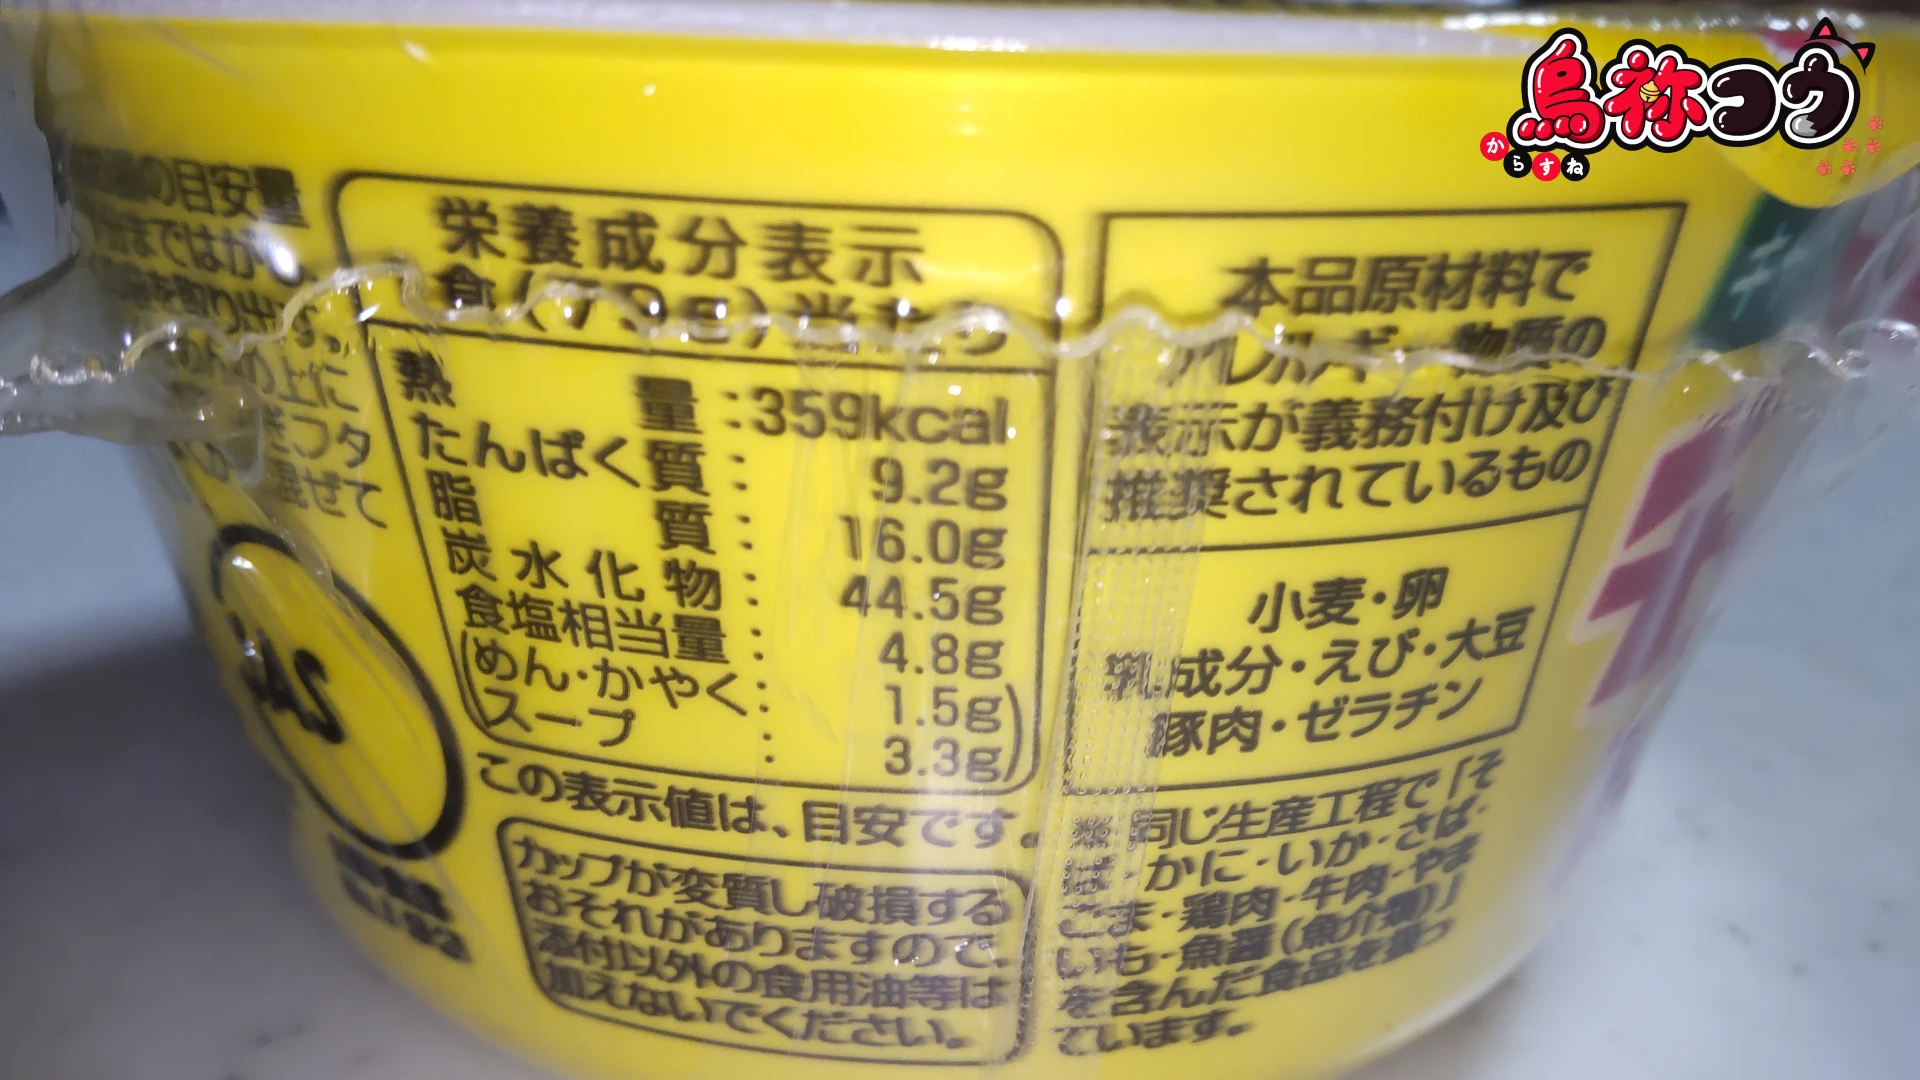 イトメンのカップチャンポンめんの栄養成分表示など